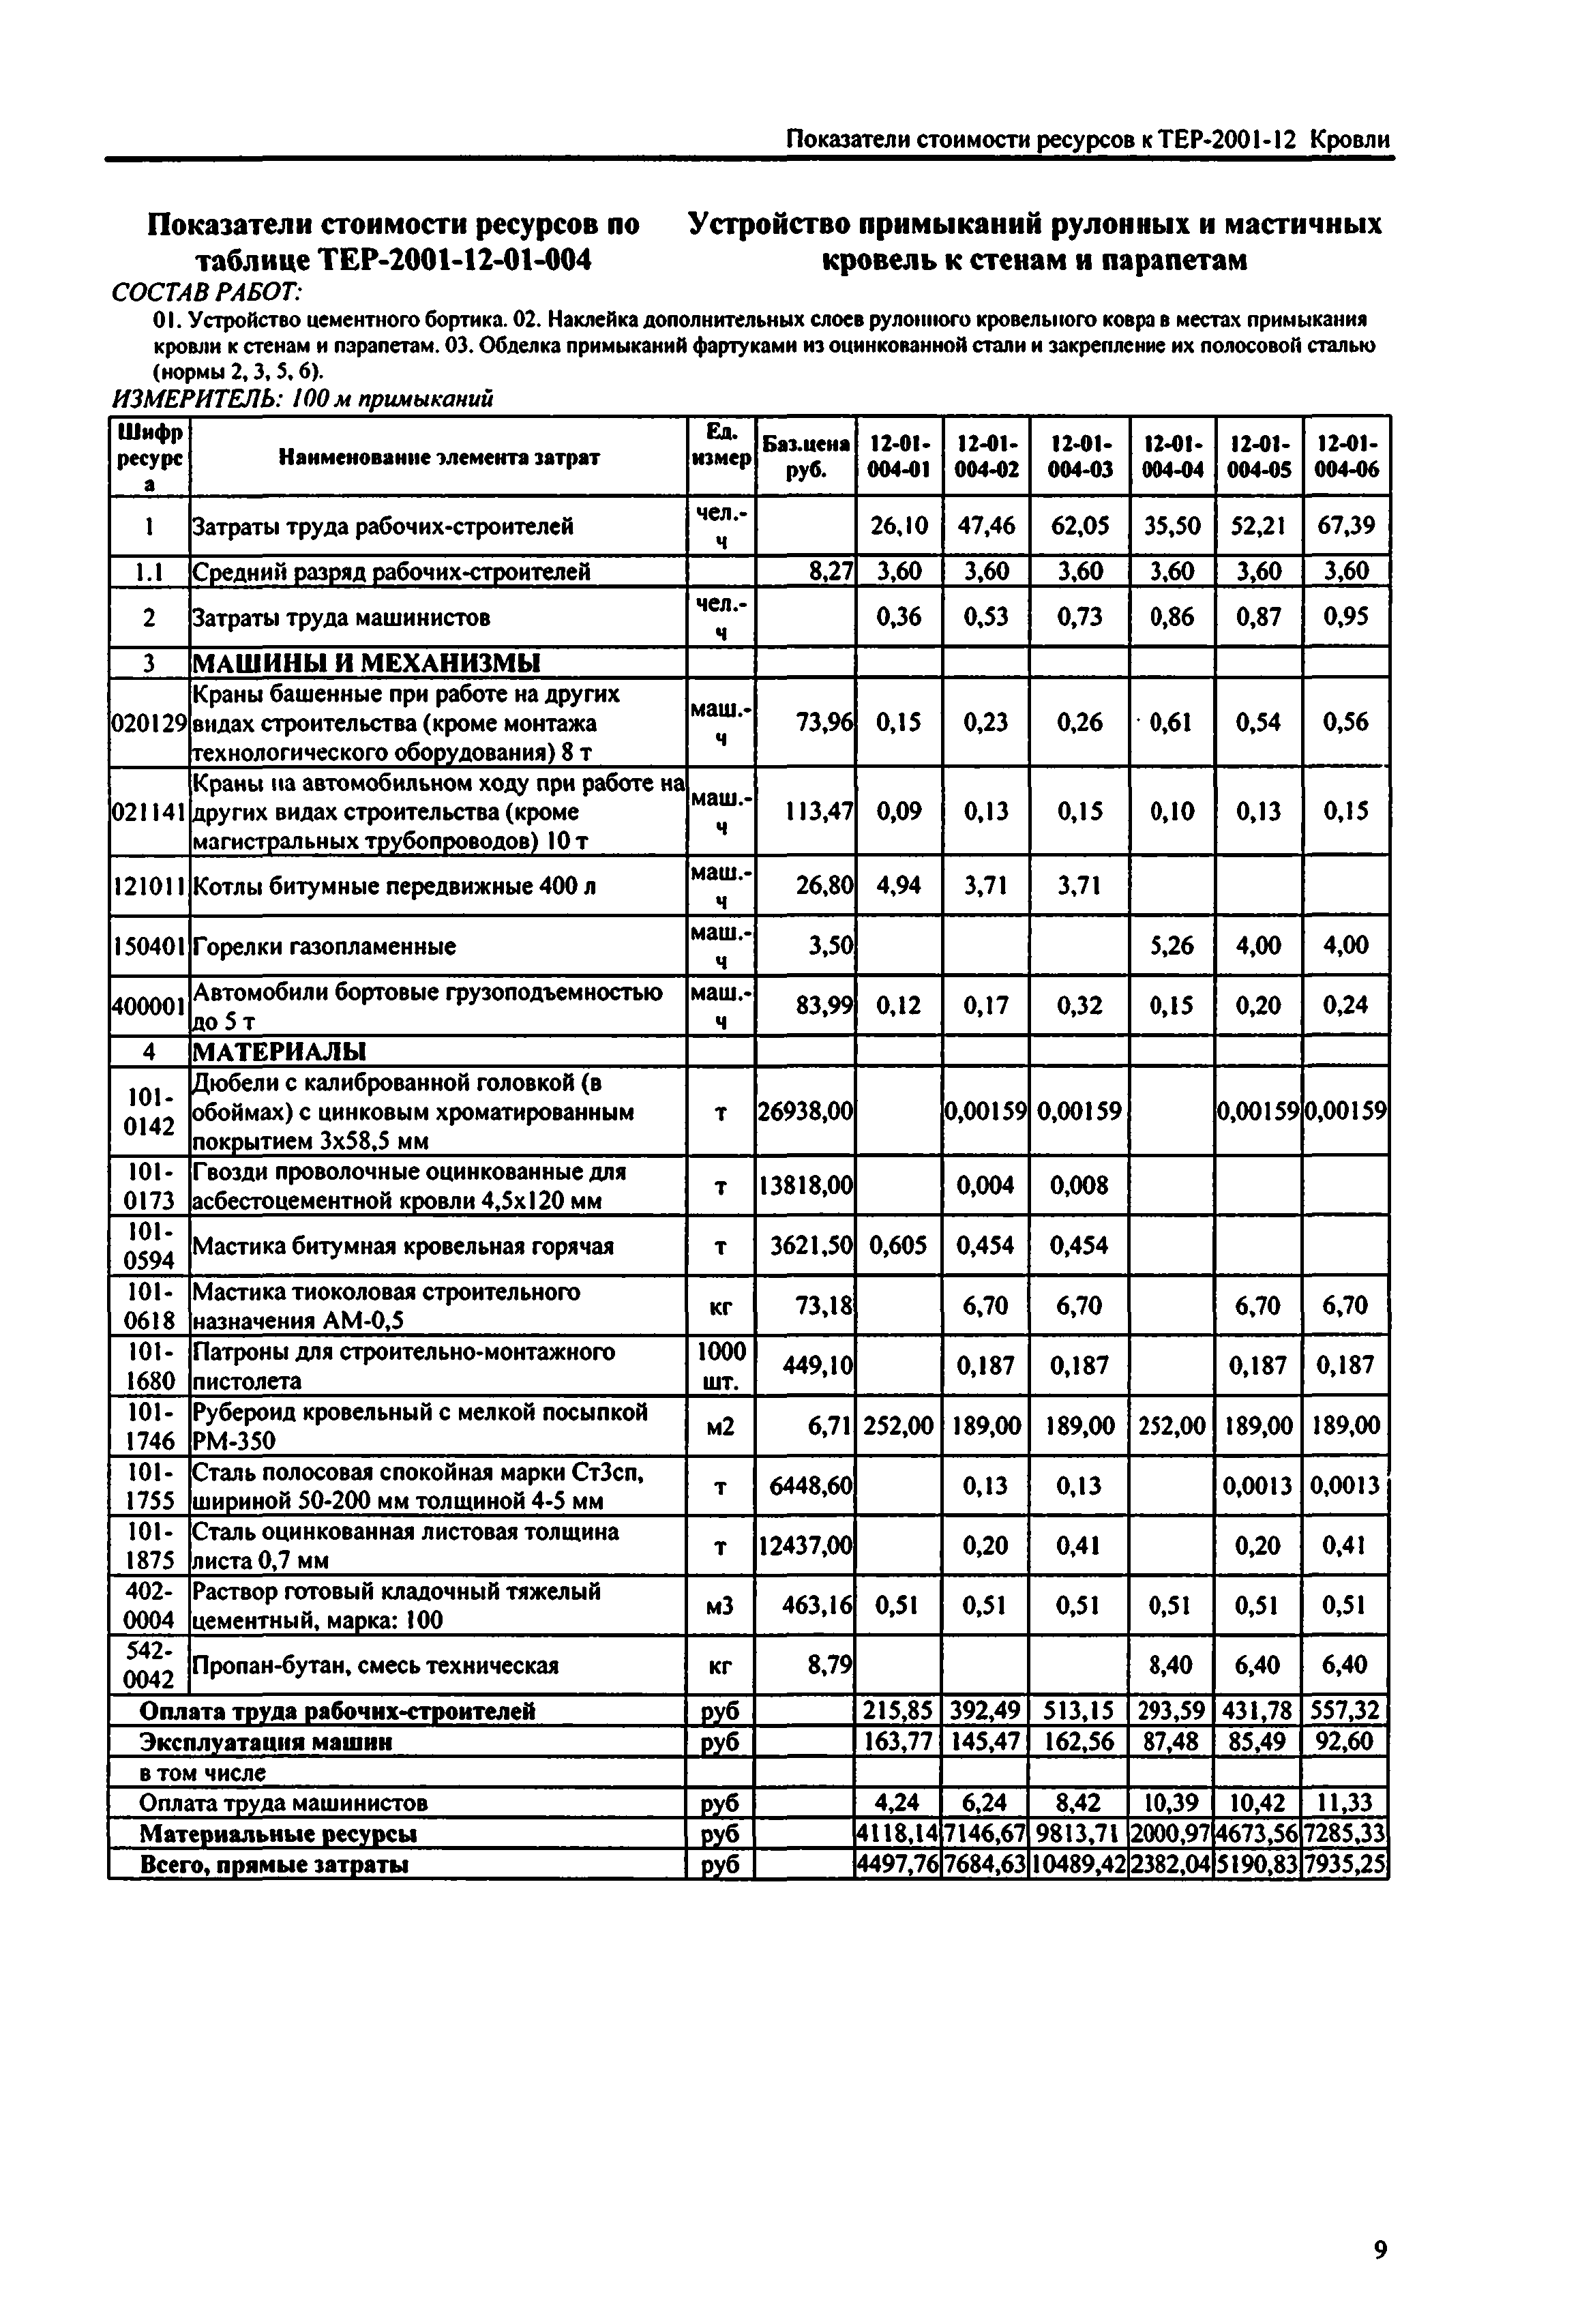 Справочное пособие к ТЕР 81-02-12-2001